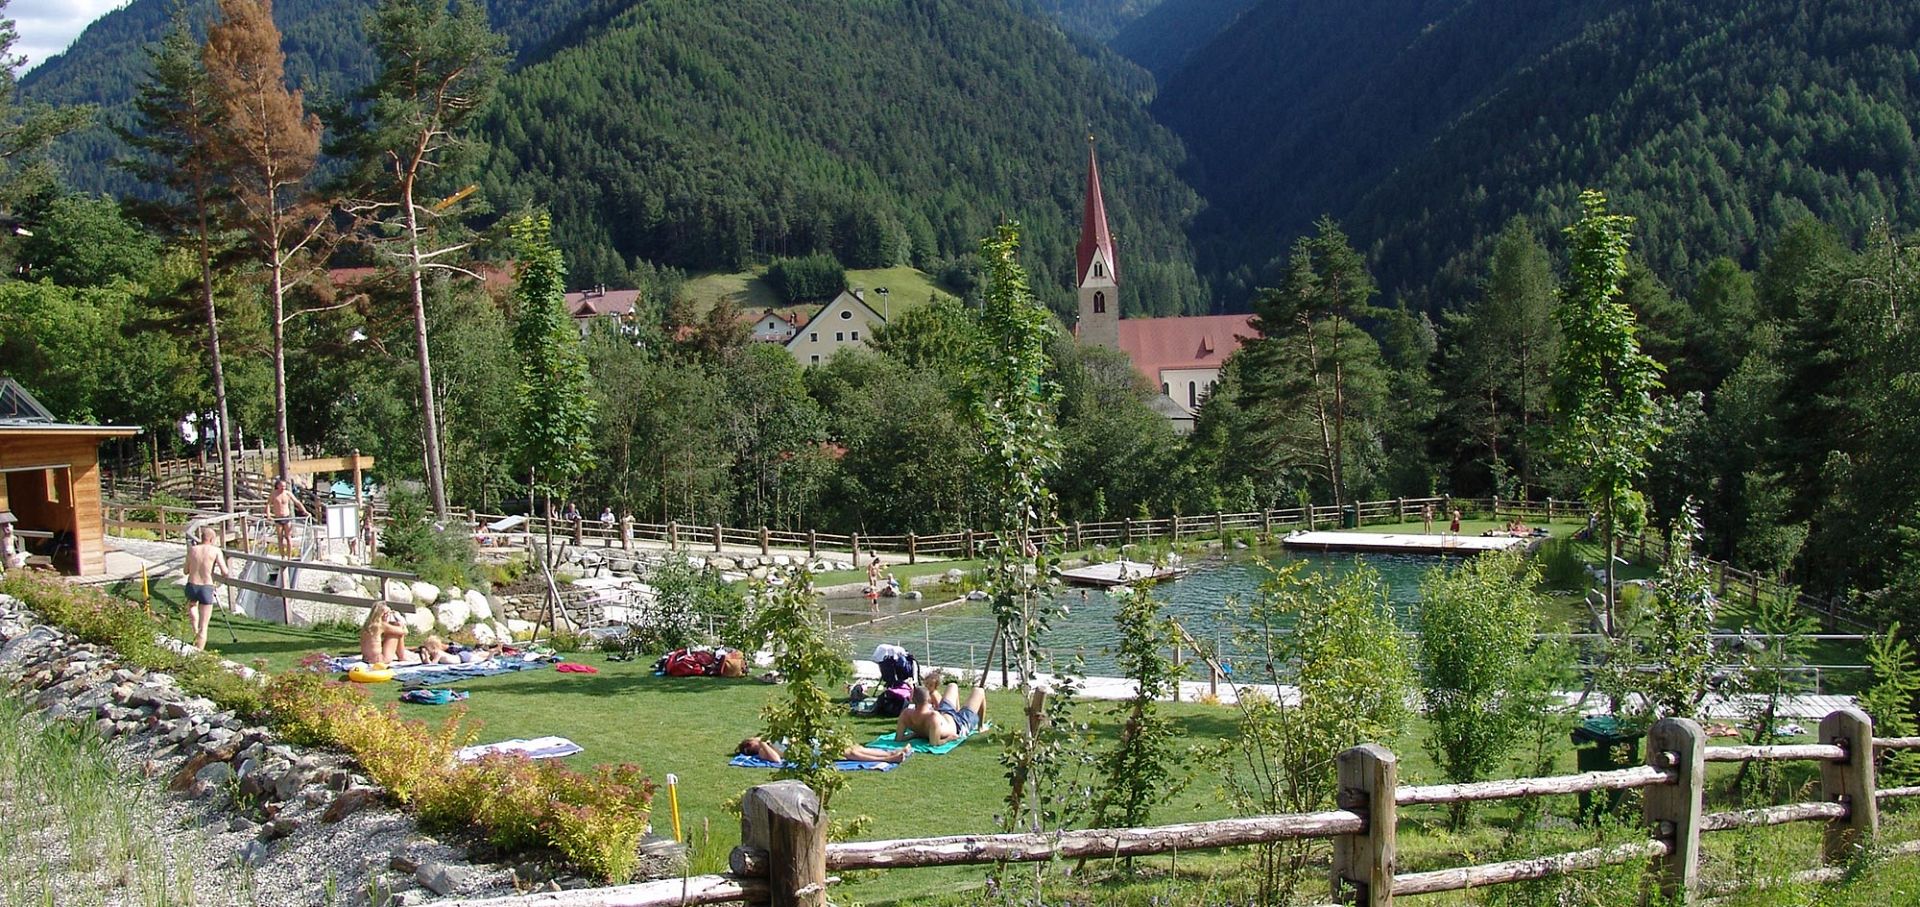 La vostra vacanza attiva a Luson/Alto Adige